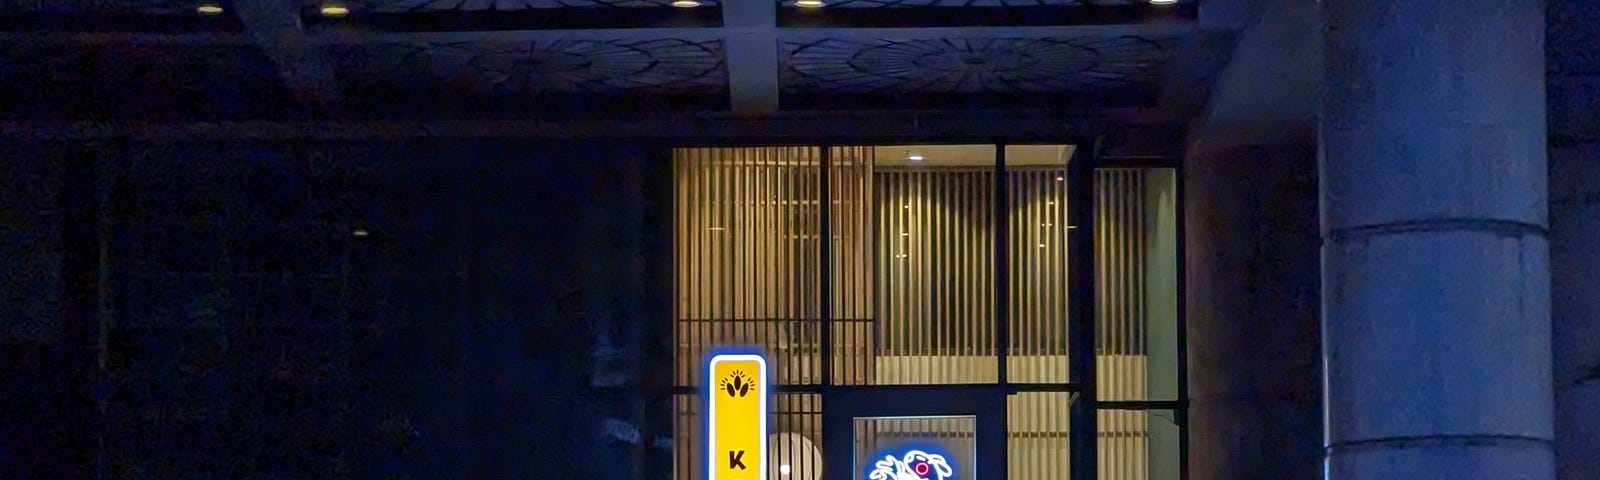 Kodawari Store Front